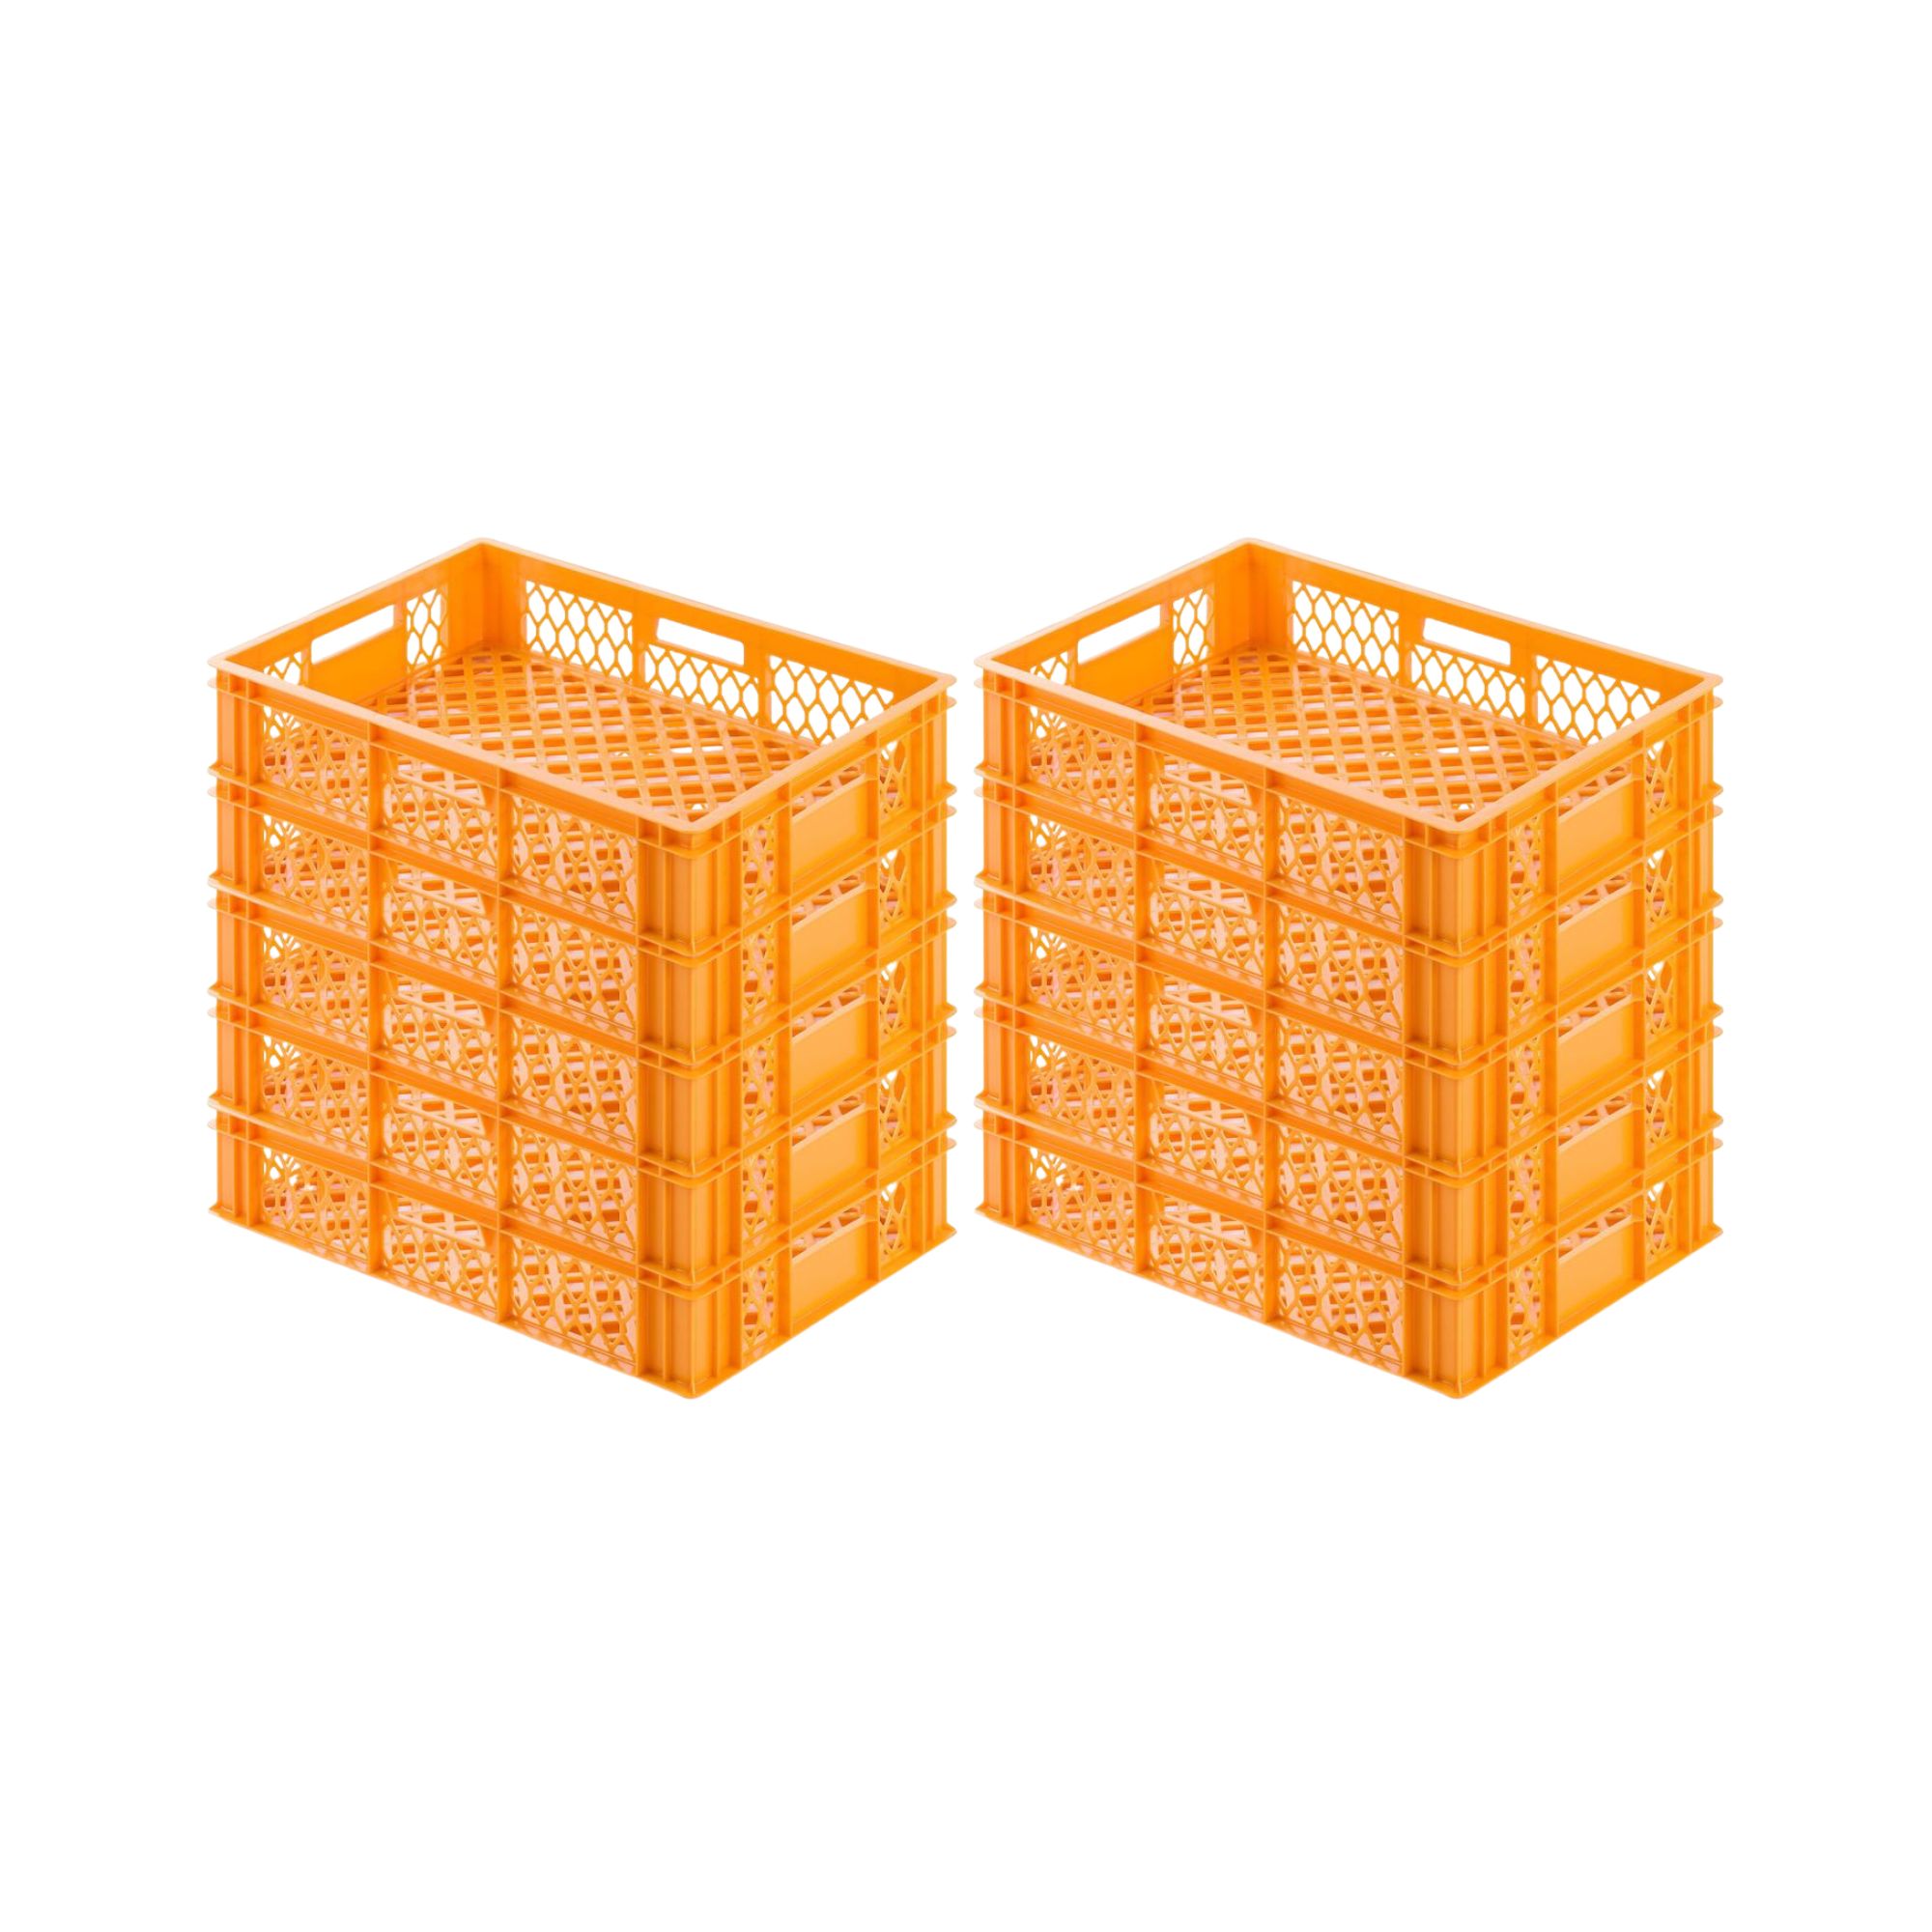 Eurobehälter Bäcker- & Konditorenkasten | HxBxT 13x40x60 | 24 Liter | Gelb-Orange | Brötchenkiste, stapelbare Bäckerkiste